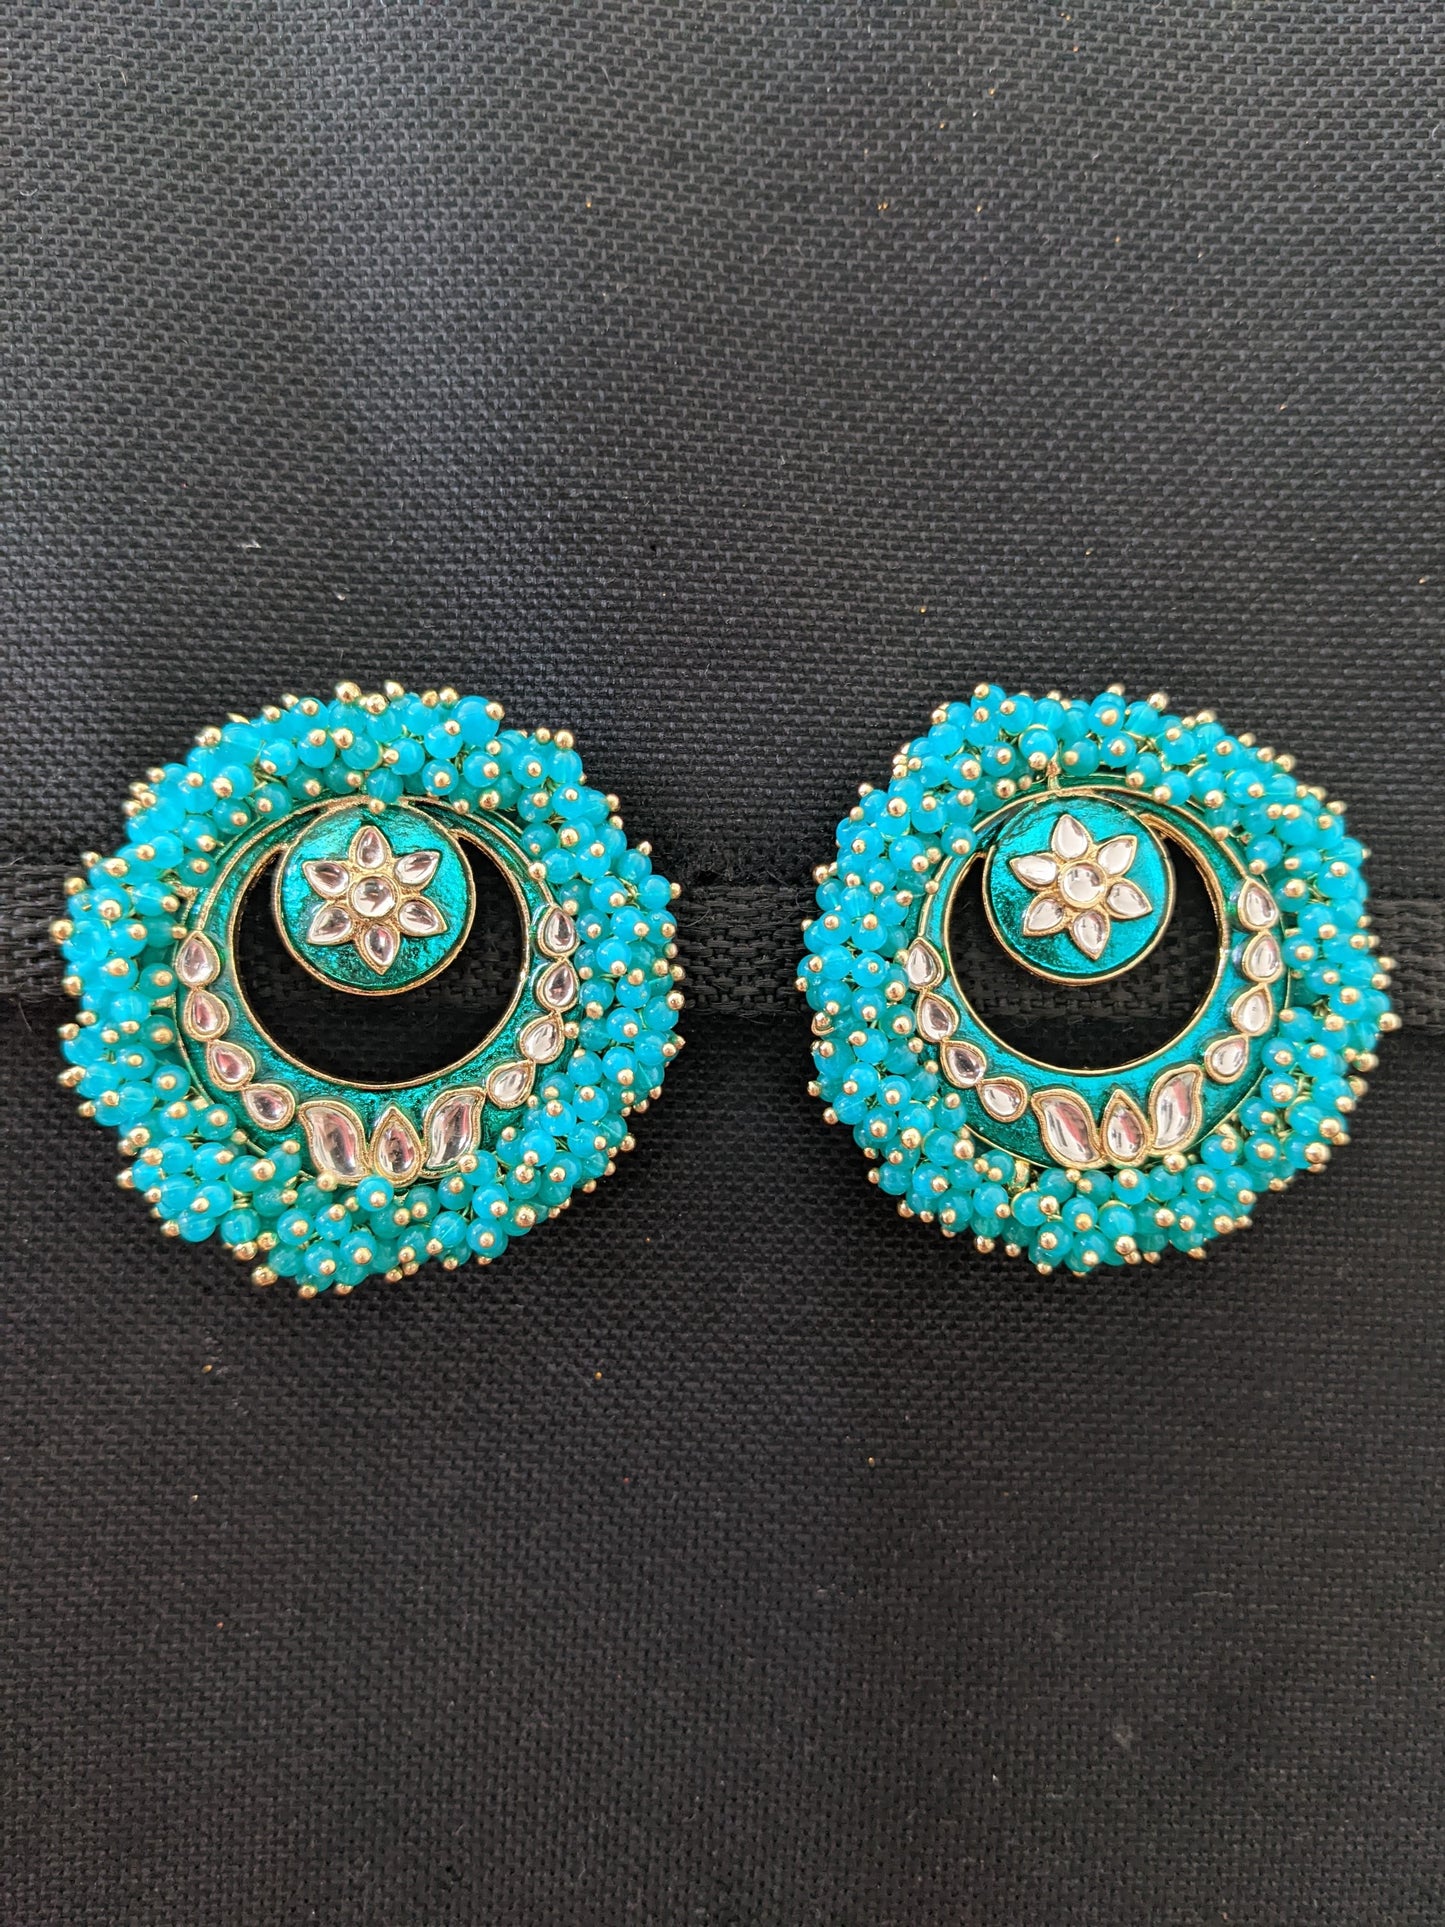 XXL size cluster bead surrounded Enamel Stud Earrings